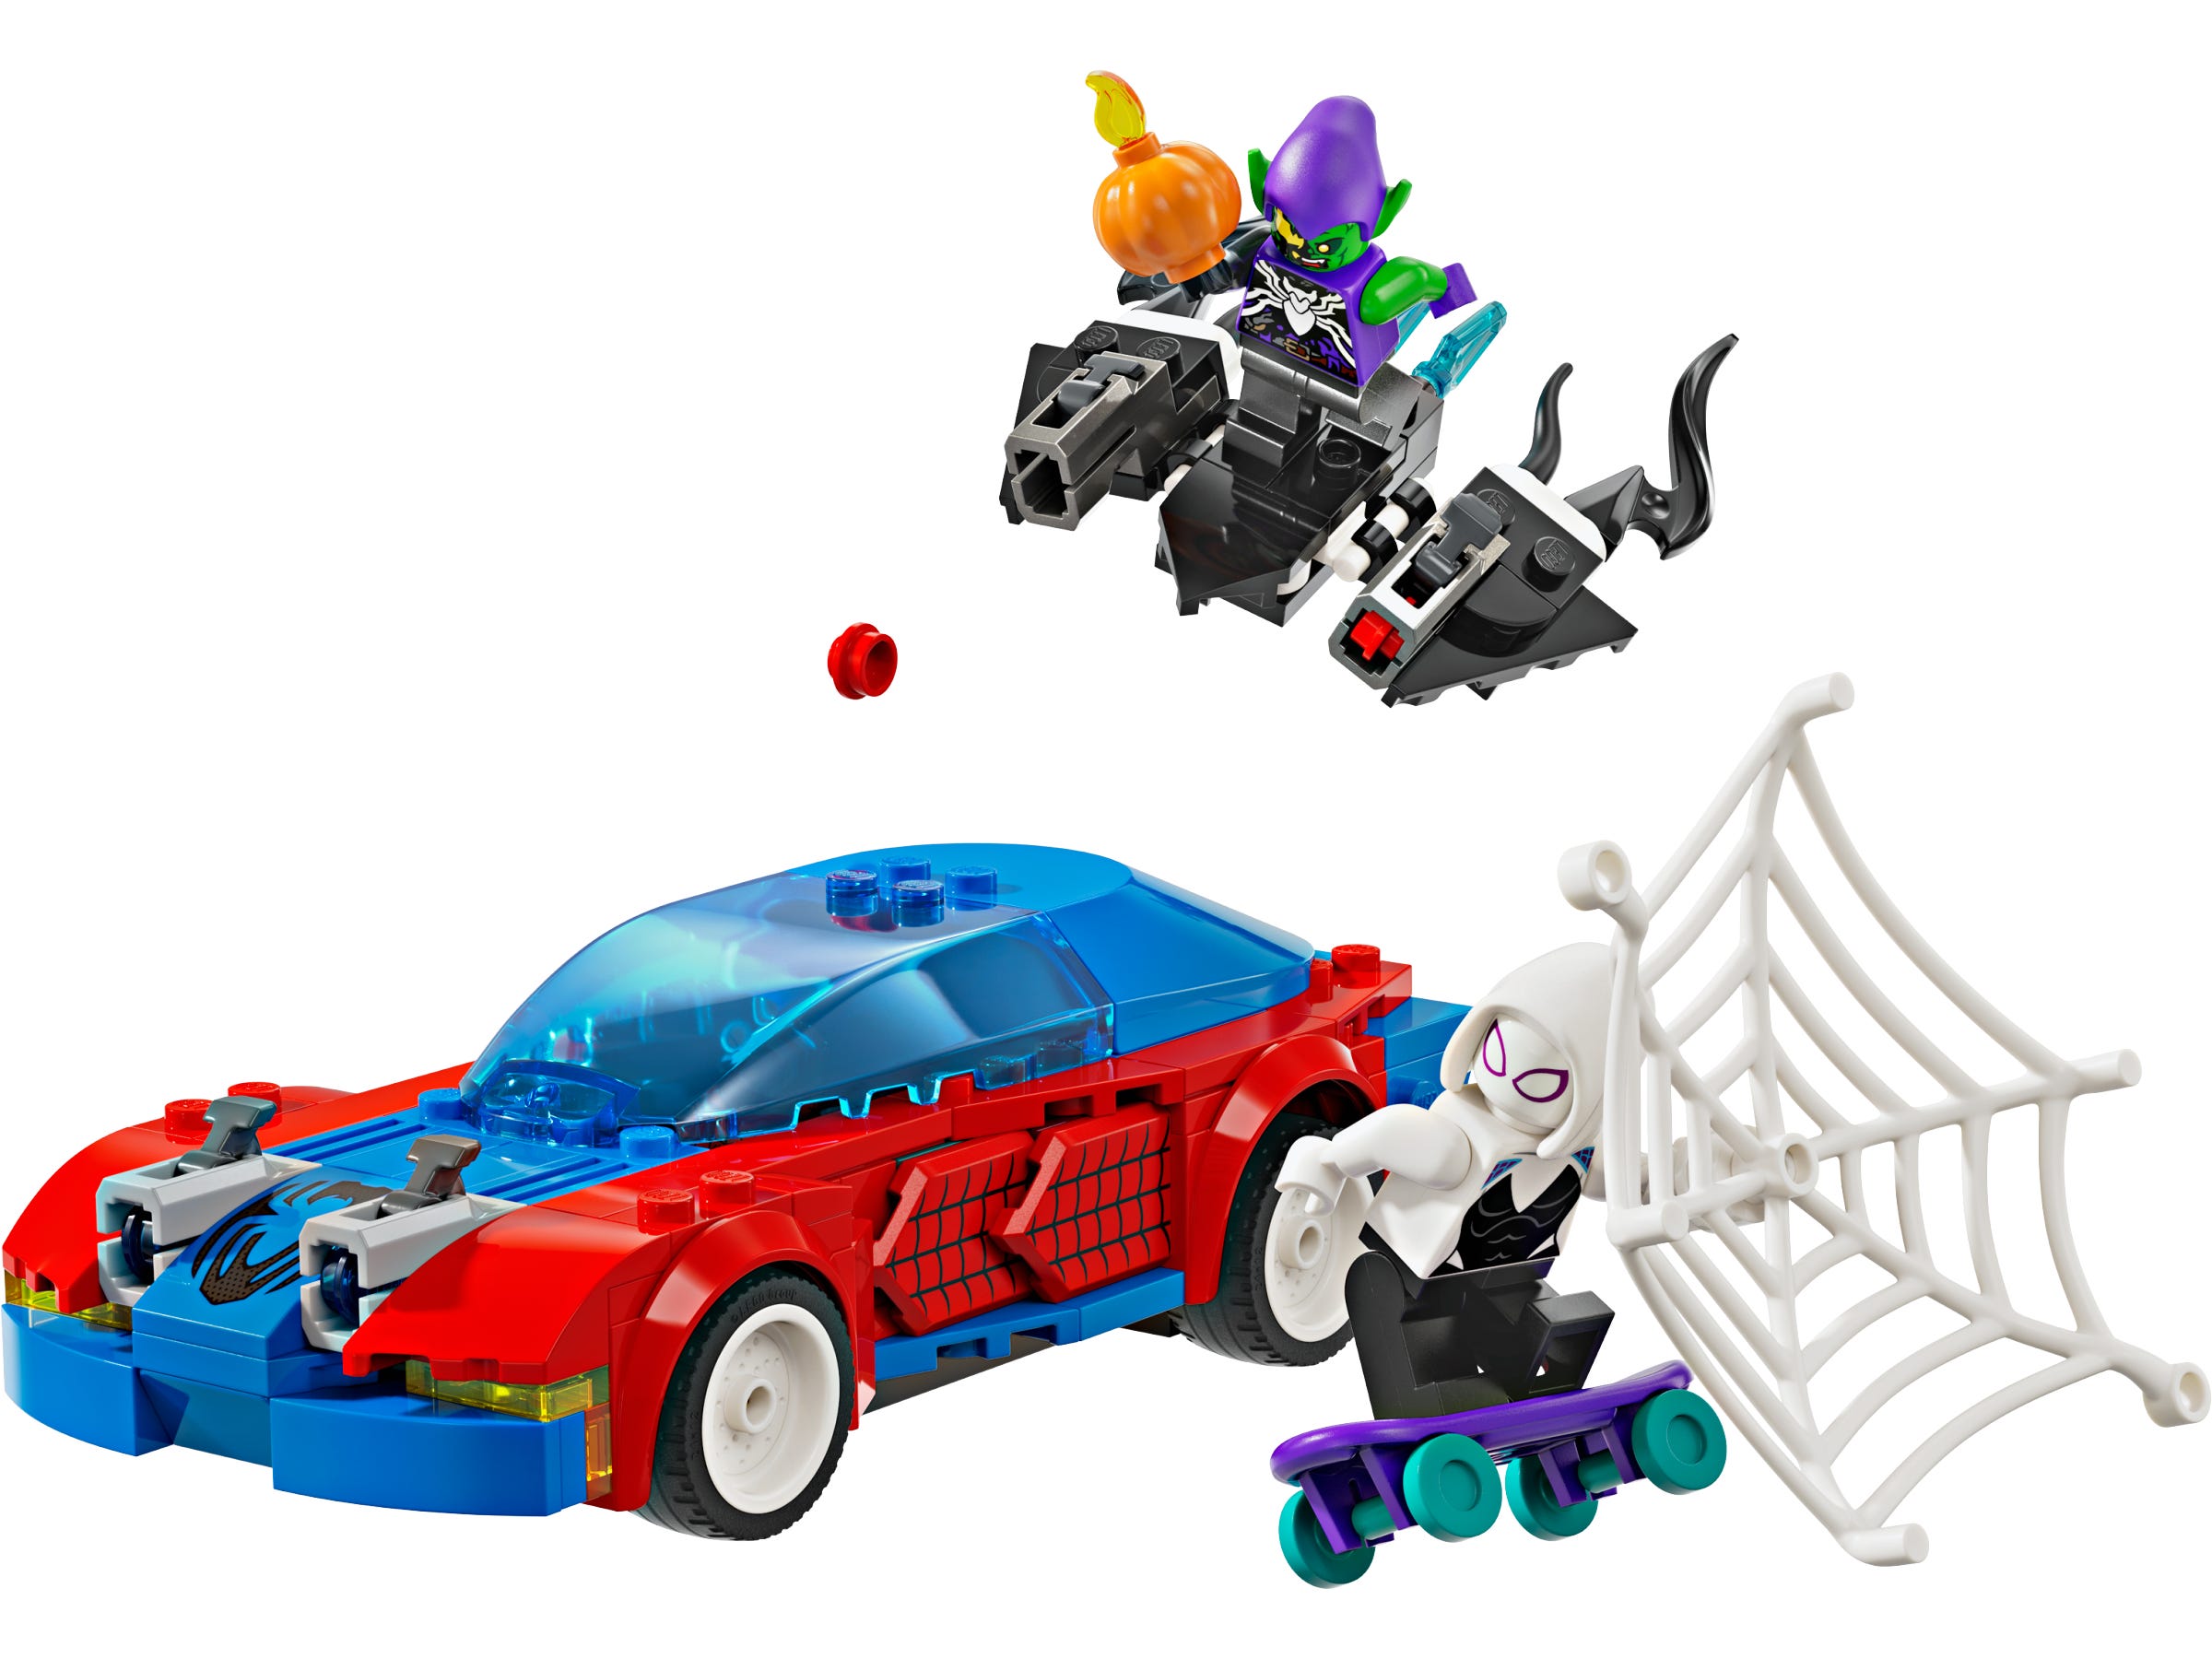 Spider-Man racewagen en Venom Green Goblin